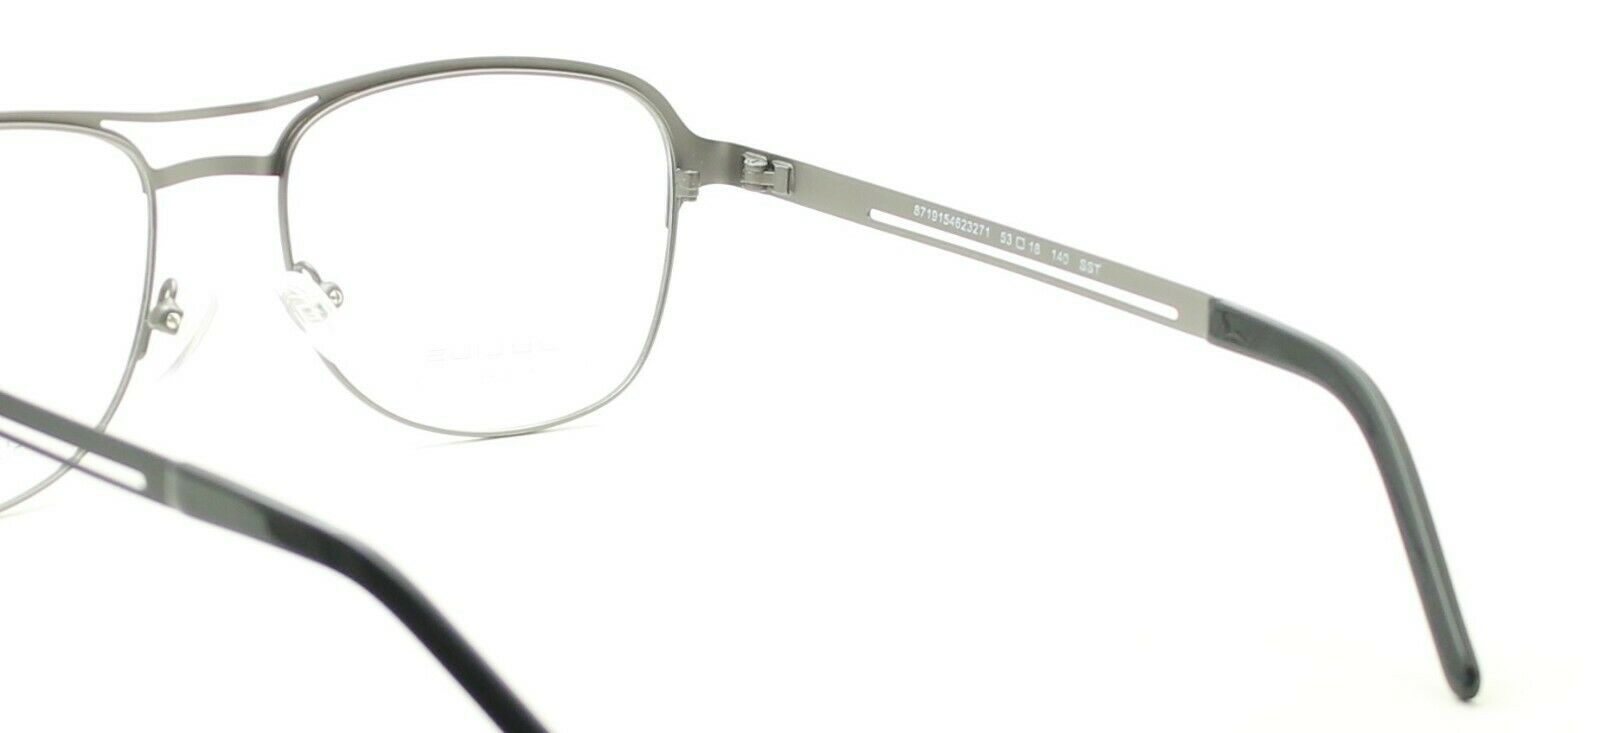 Van dienen stuk JULIUS JUBM15 BG 53mm Eyewear FRAMES Glasses RX Optical Eyeglasses New -  TRUSTED - GGV Eyewear